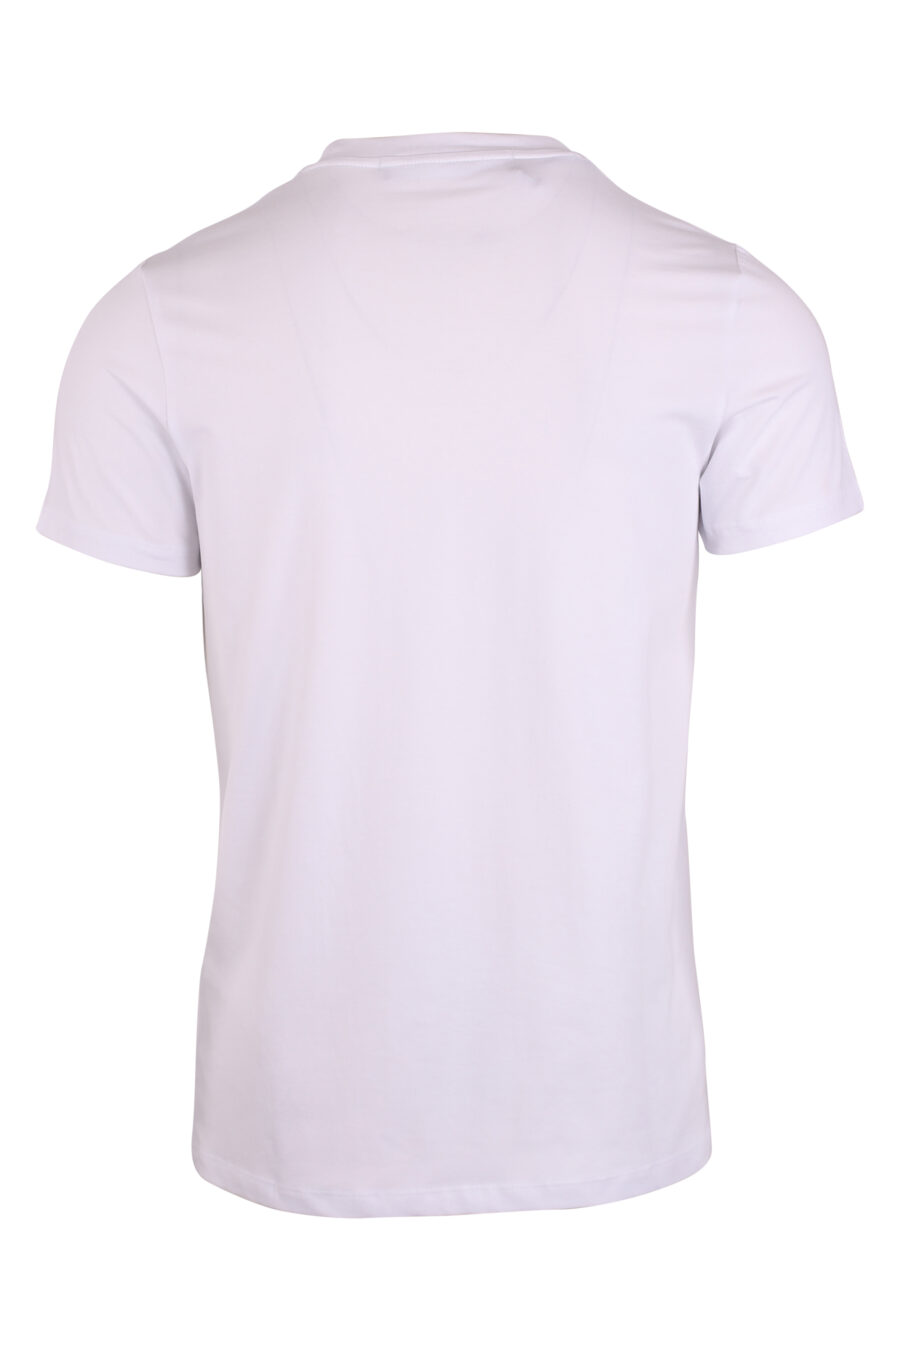 Weißes T-Shirt mit Reißverschlusstasche und weißem Logoaufnäher - IMG 9474